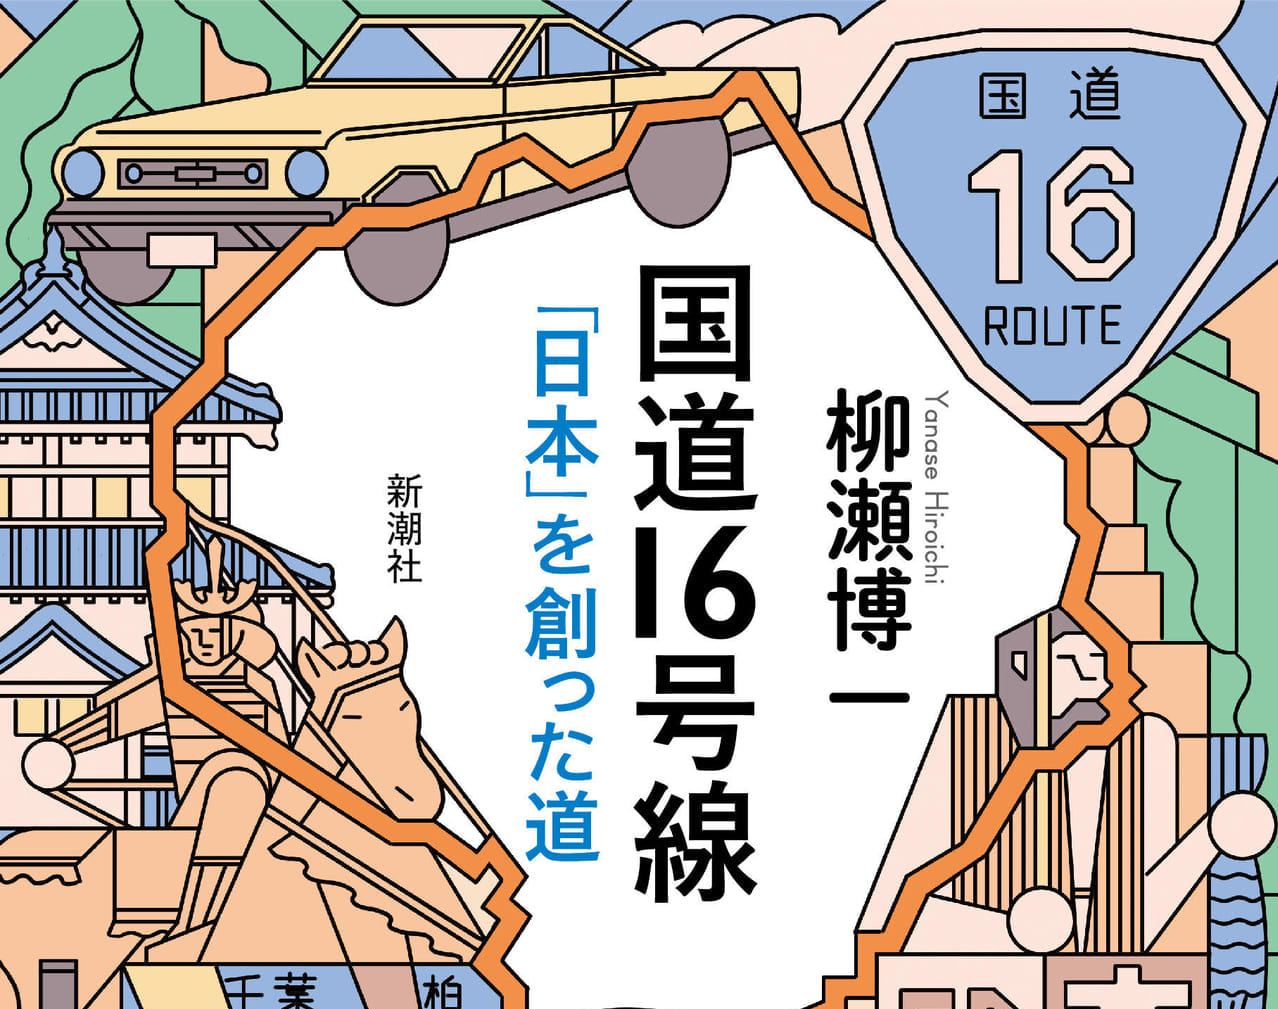 八王子市】不思議な国道16号線「日本」を創った道。地形と道で日本を